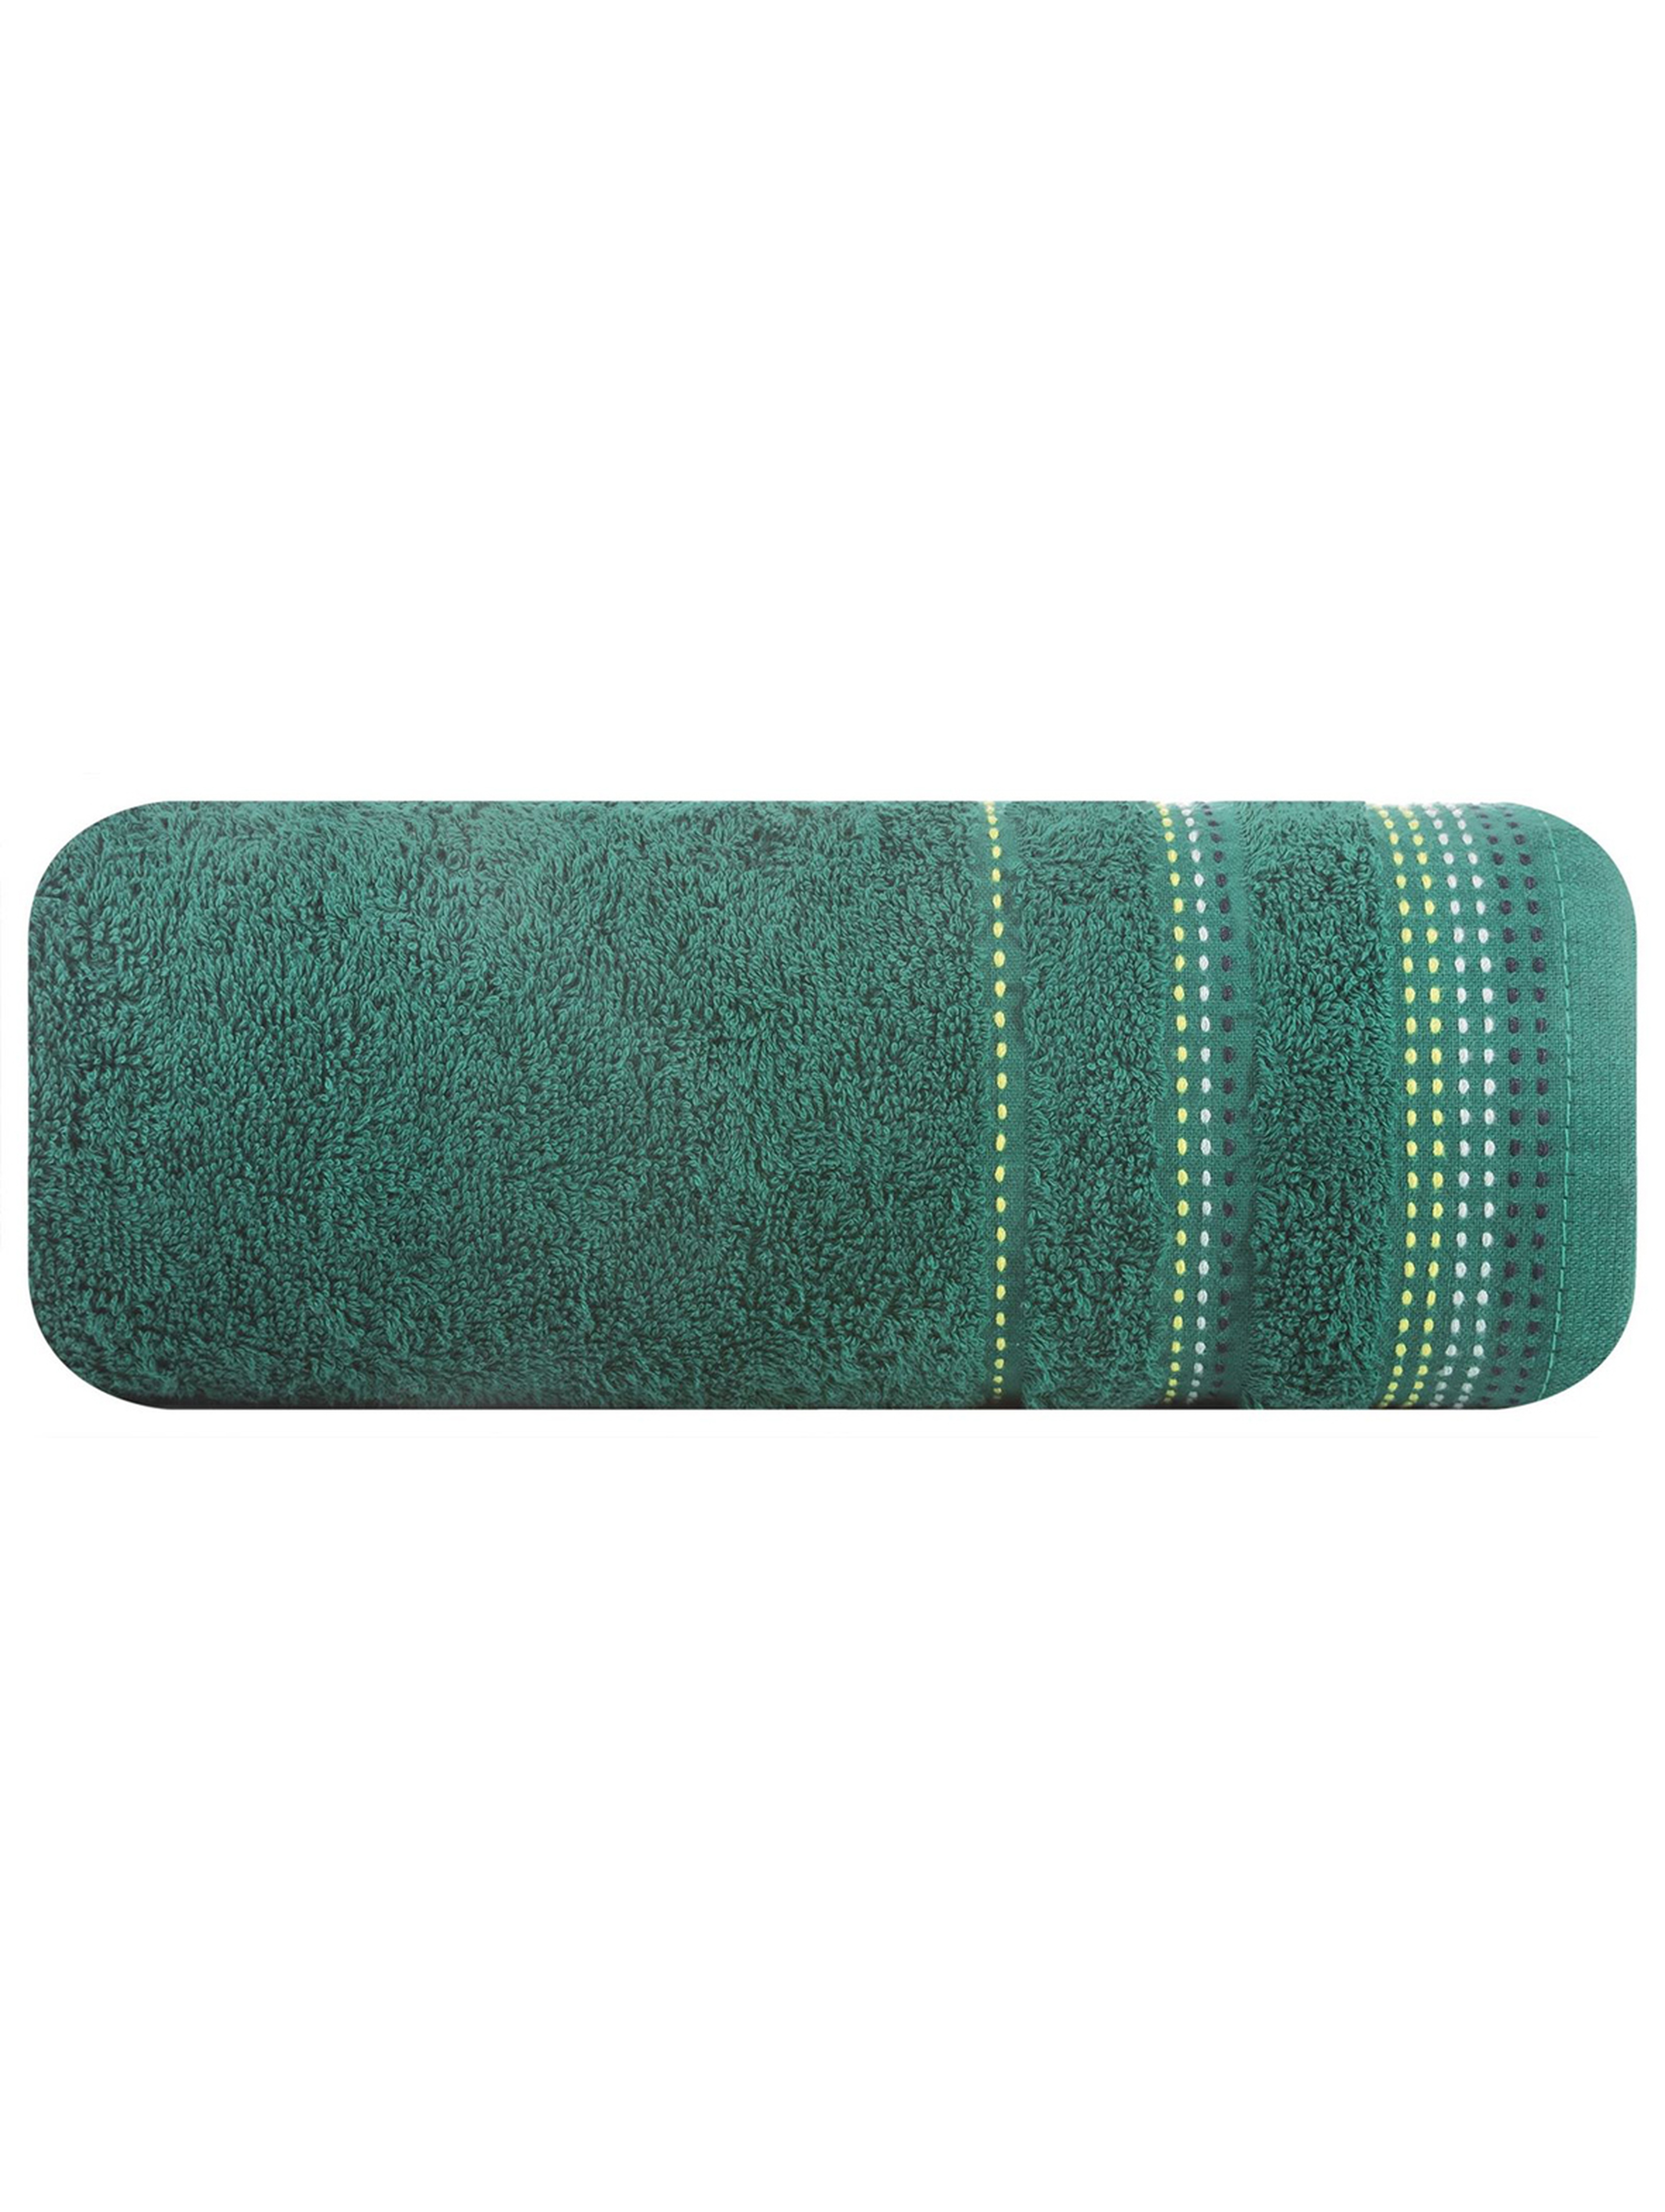 Ręcznik Pola 70x140 cm - butelkowy zielony